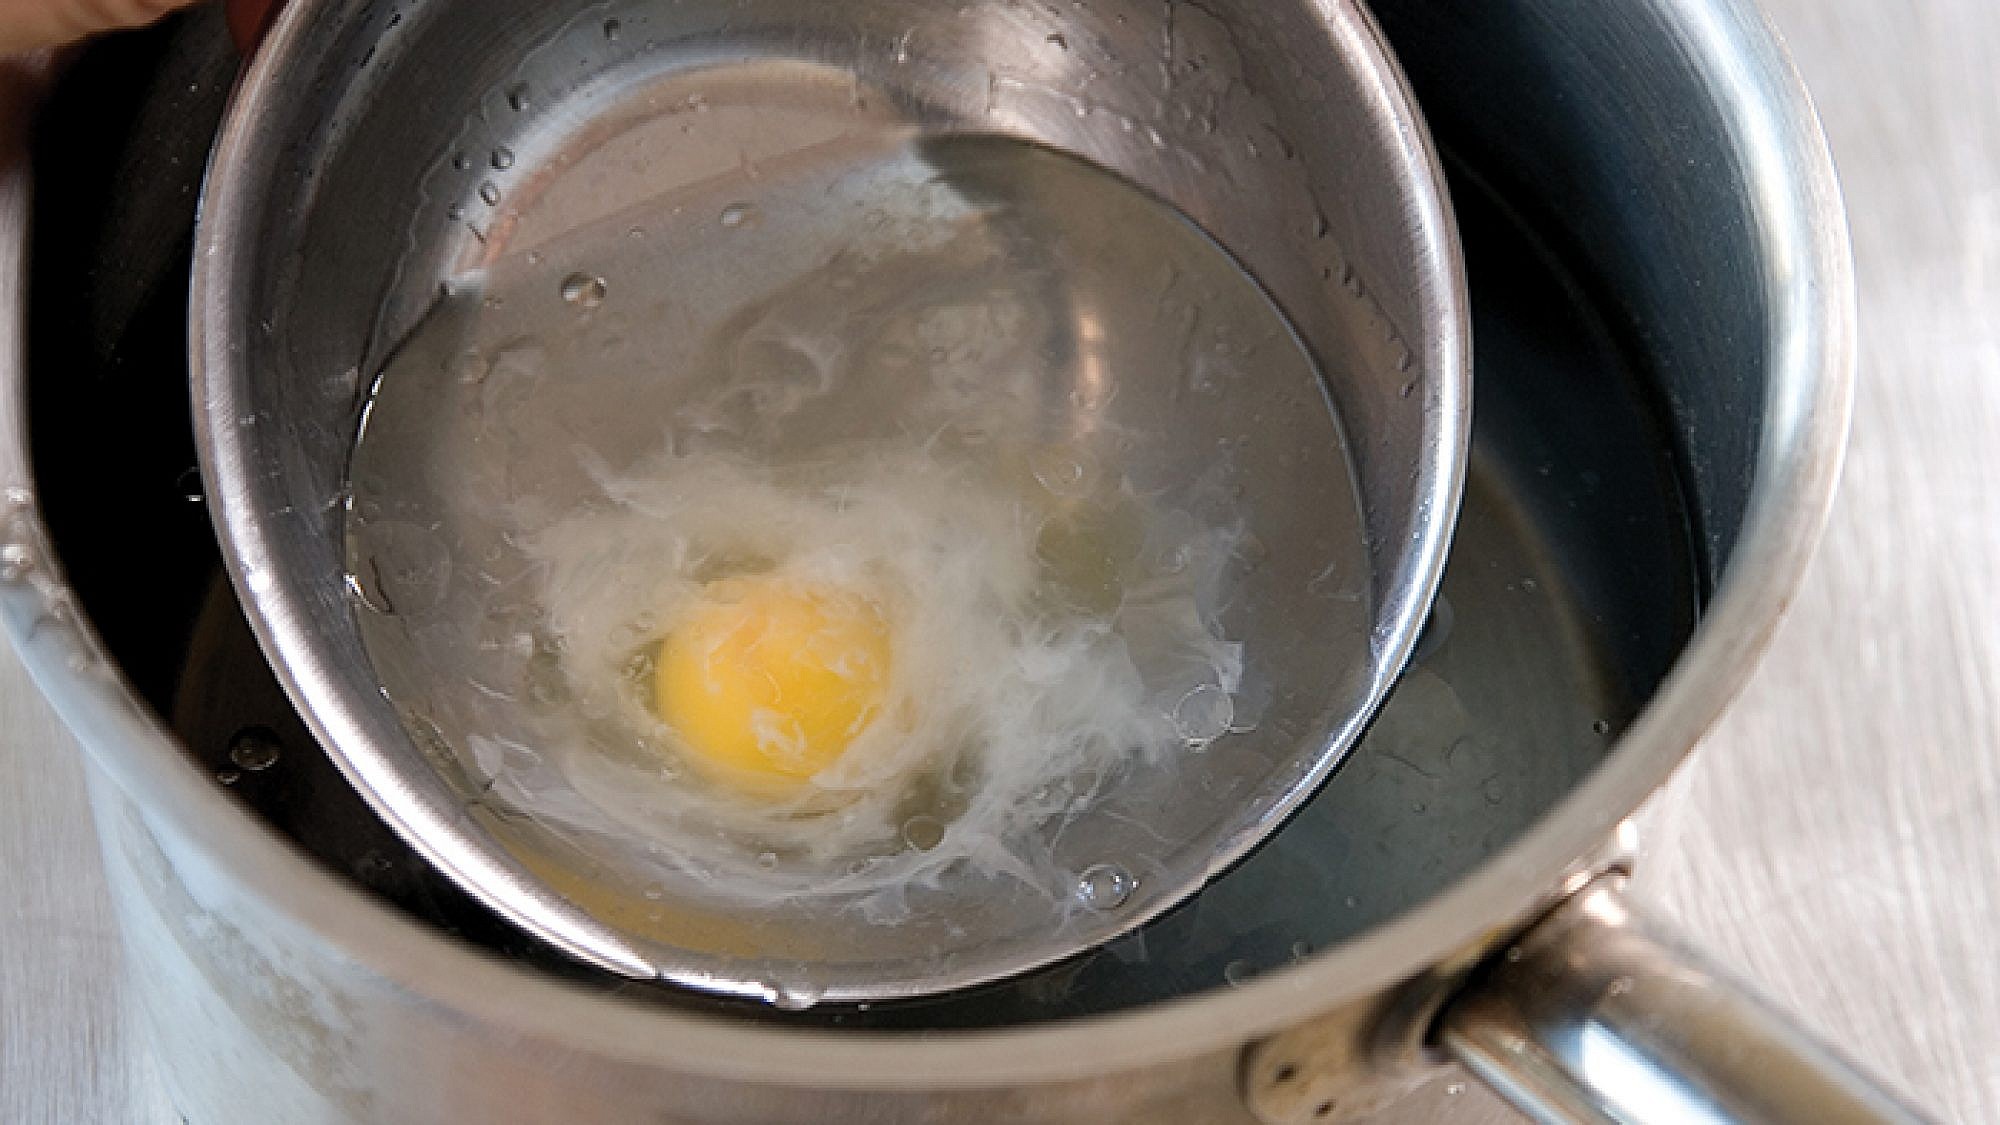 ביצה עלומה - מתכון בסיסי של מיכל מוזס. צילום: דניאל לילה. סטיילינג: טליה אסיף